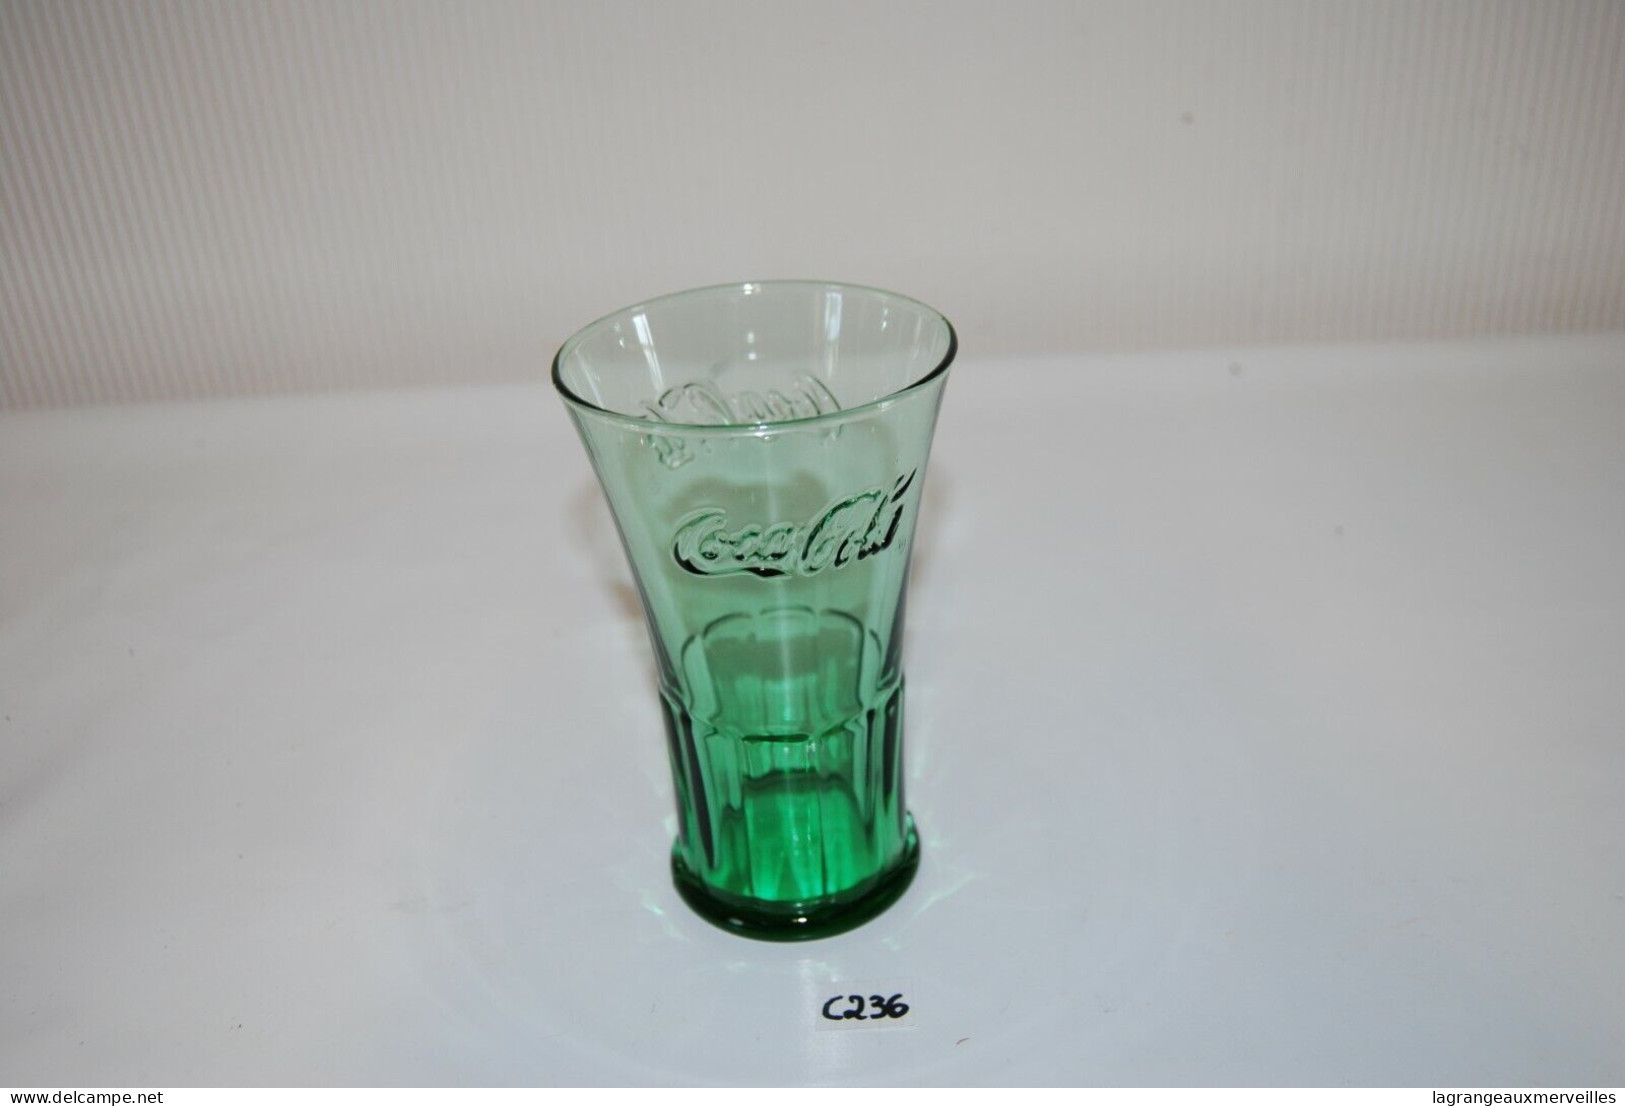 C236 Coca Cola - Ancien Verre De Collection - Glas Collector - Mugs & Glasses